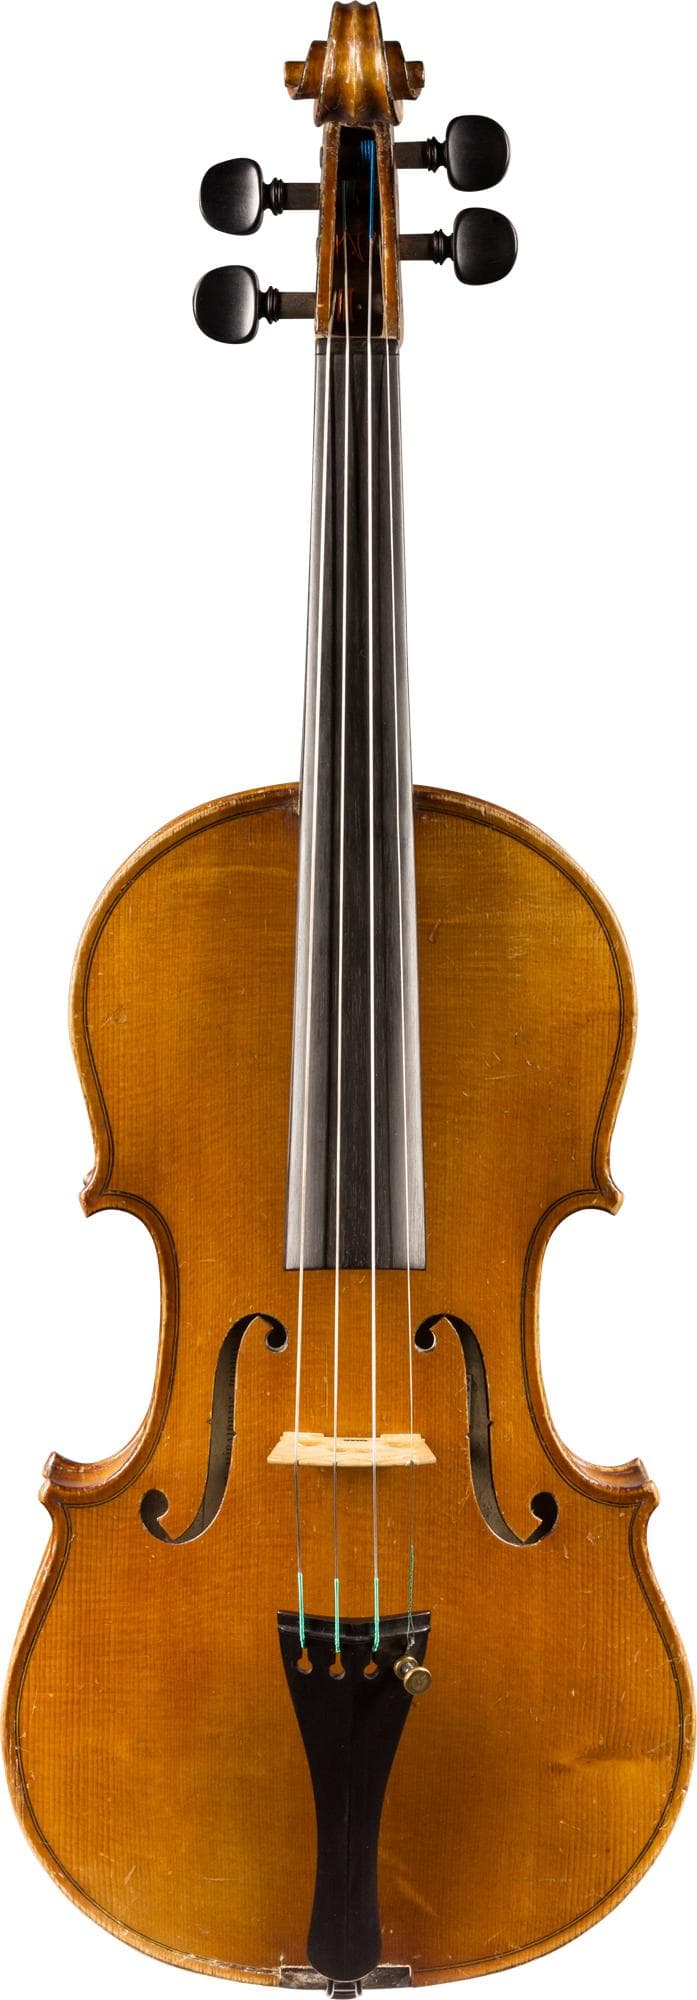 Laberte Workshop Violin, Mirecourt, c.1920, 3/4